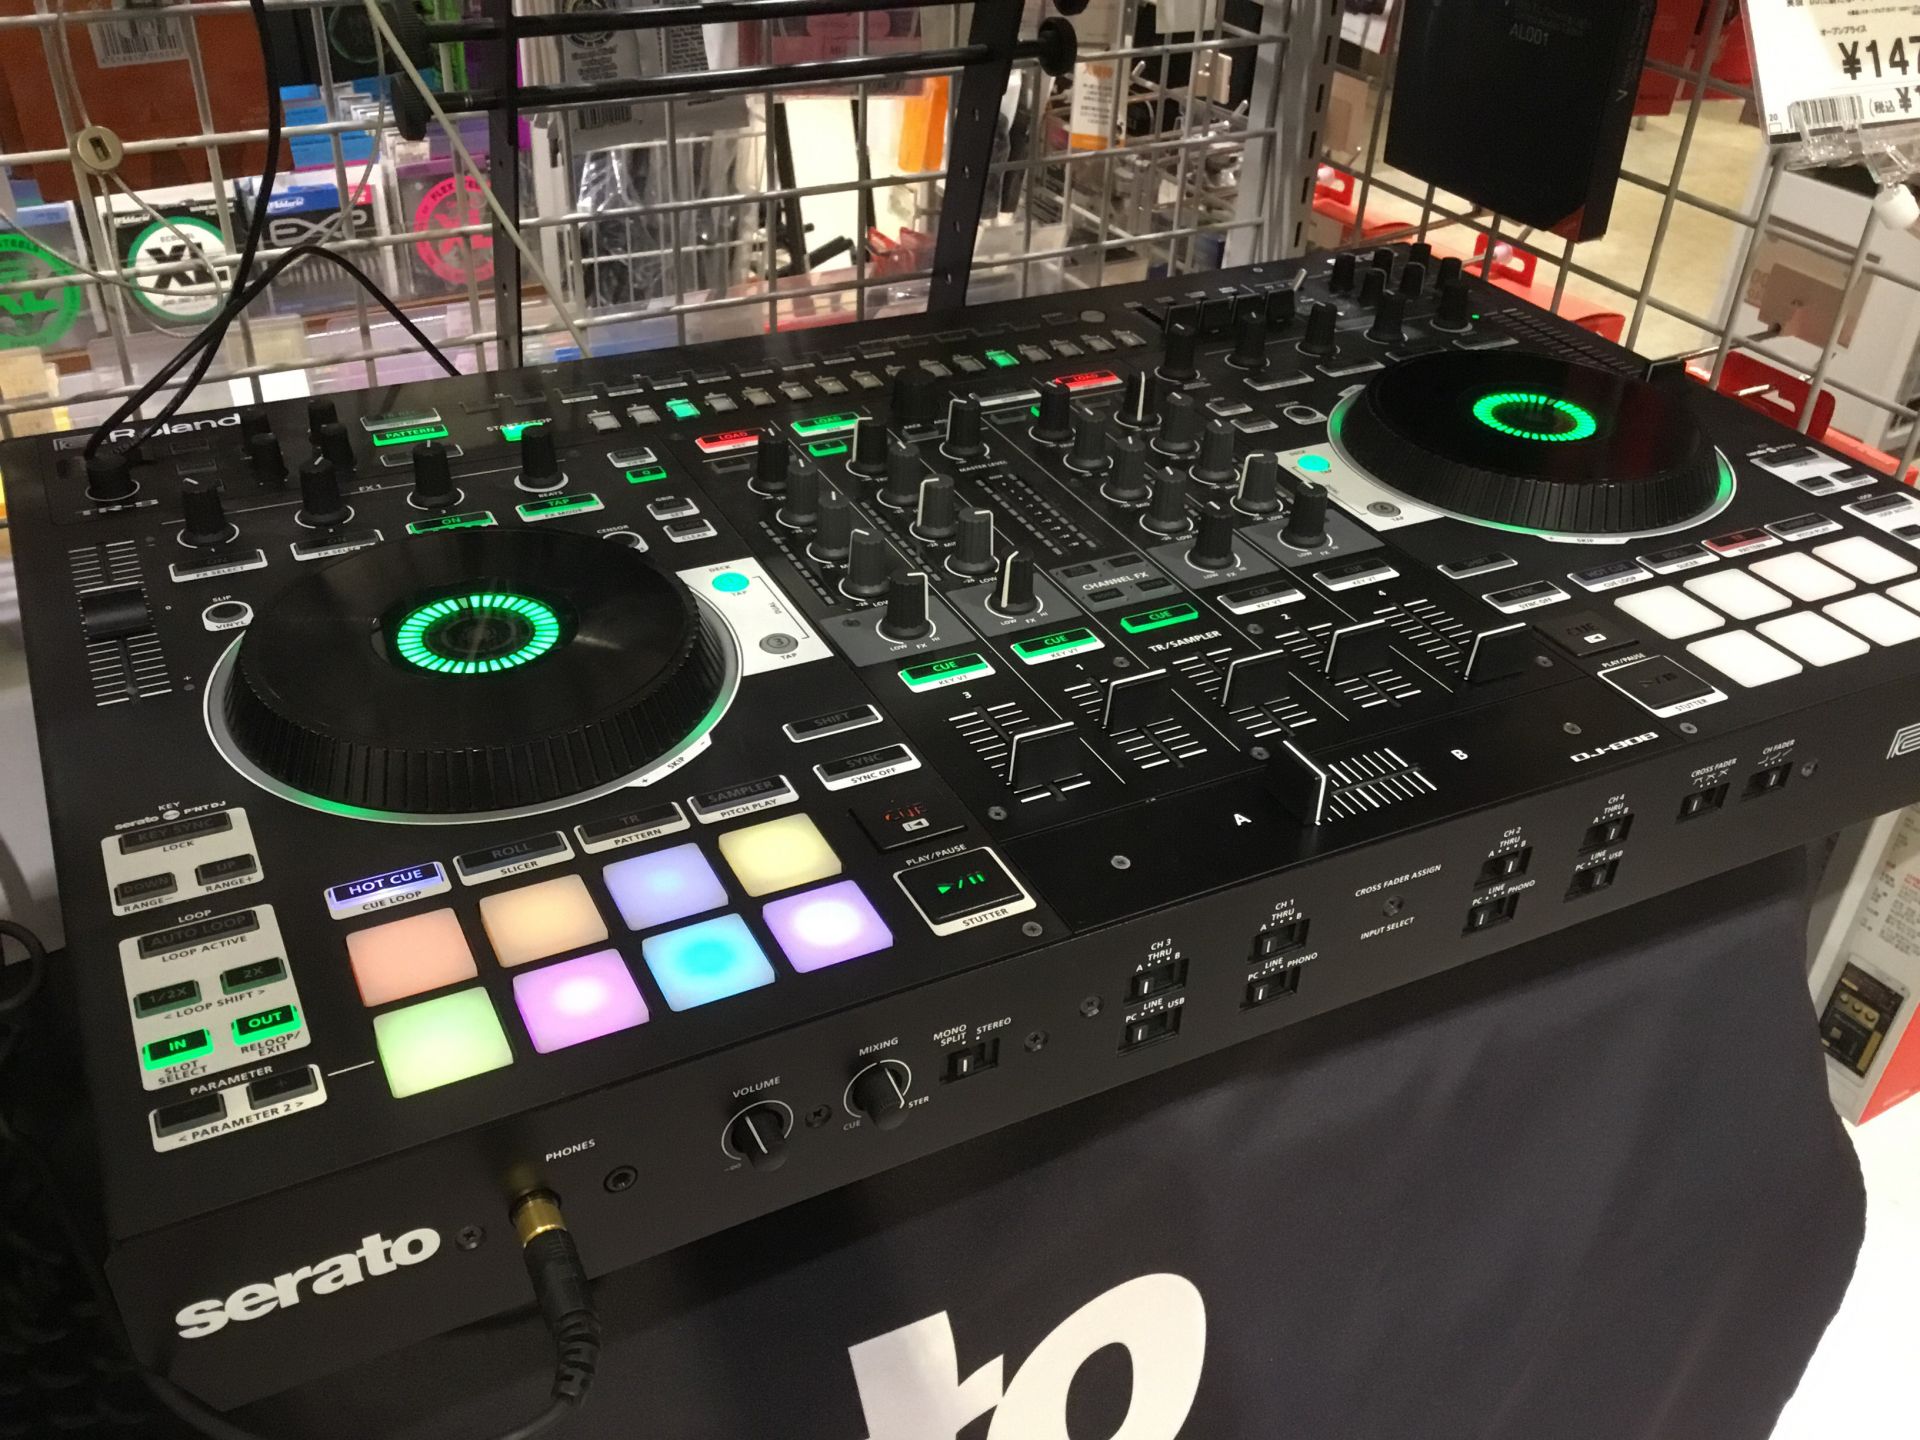 *serato DJとRolandハードウェアとの完全なる同期演奏を実現DJに新たなパフォーマンスを提供するコントローラー DJ-808は、DJプレイの世界的定番となっているソフトウェア「serato DJ」をフィジカルに操作可能な専用コントローラー。Mac/PC上のserato DJをダイナミック […]